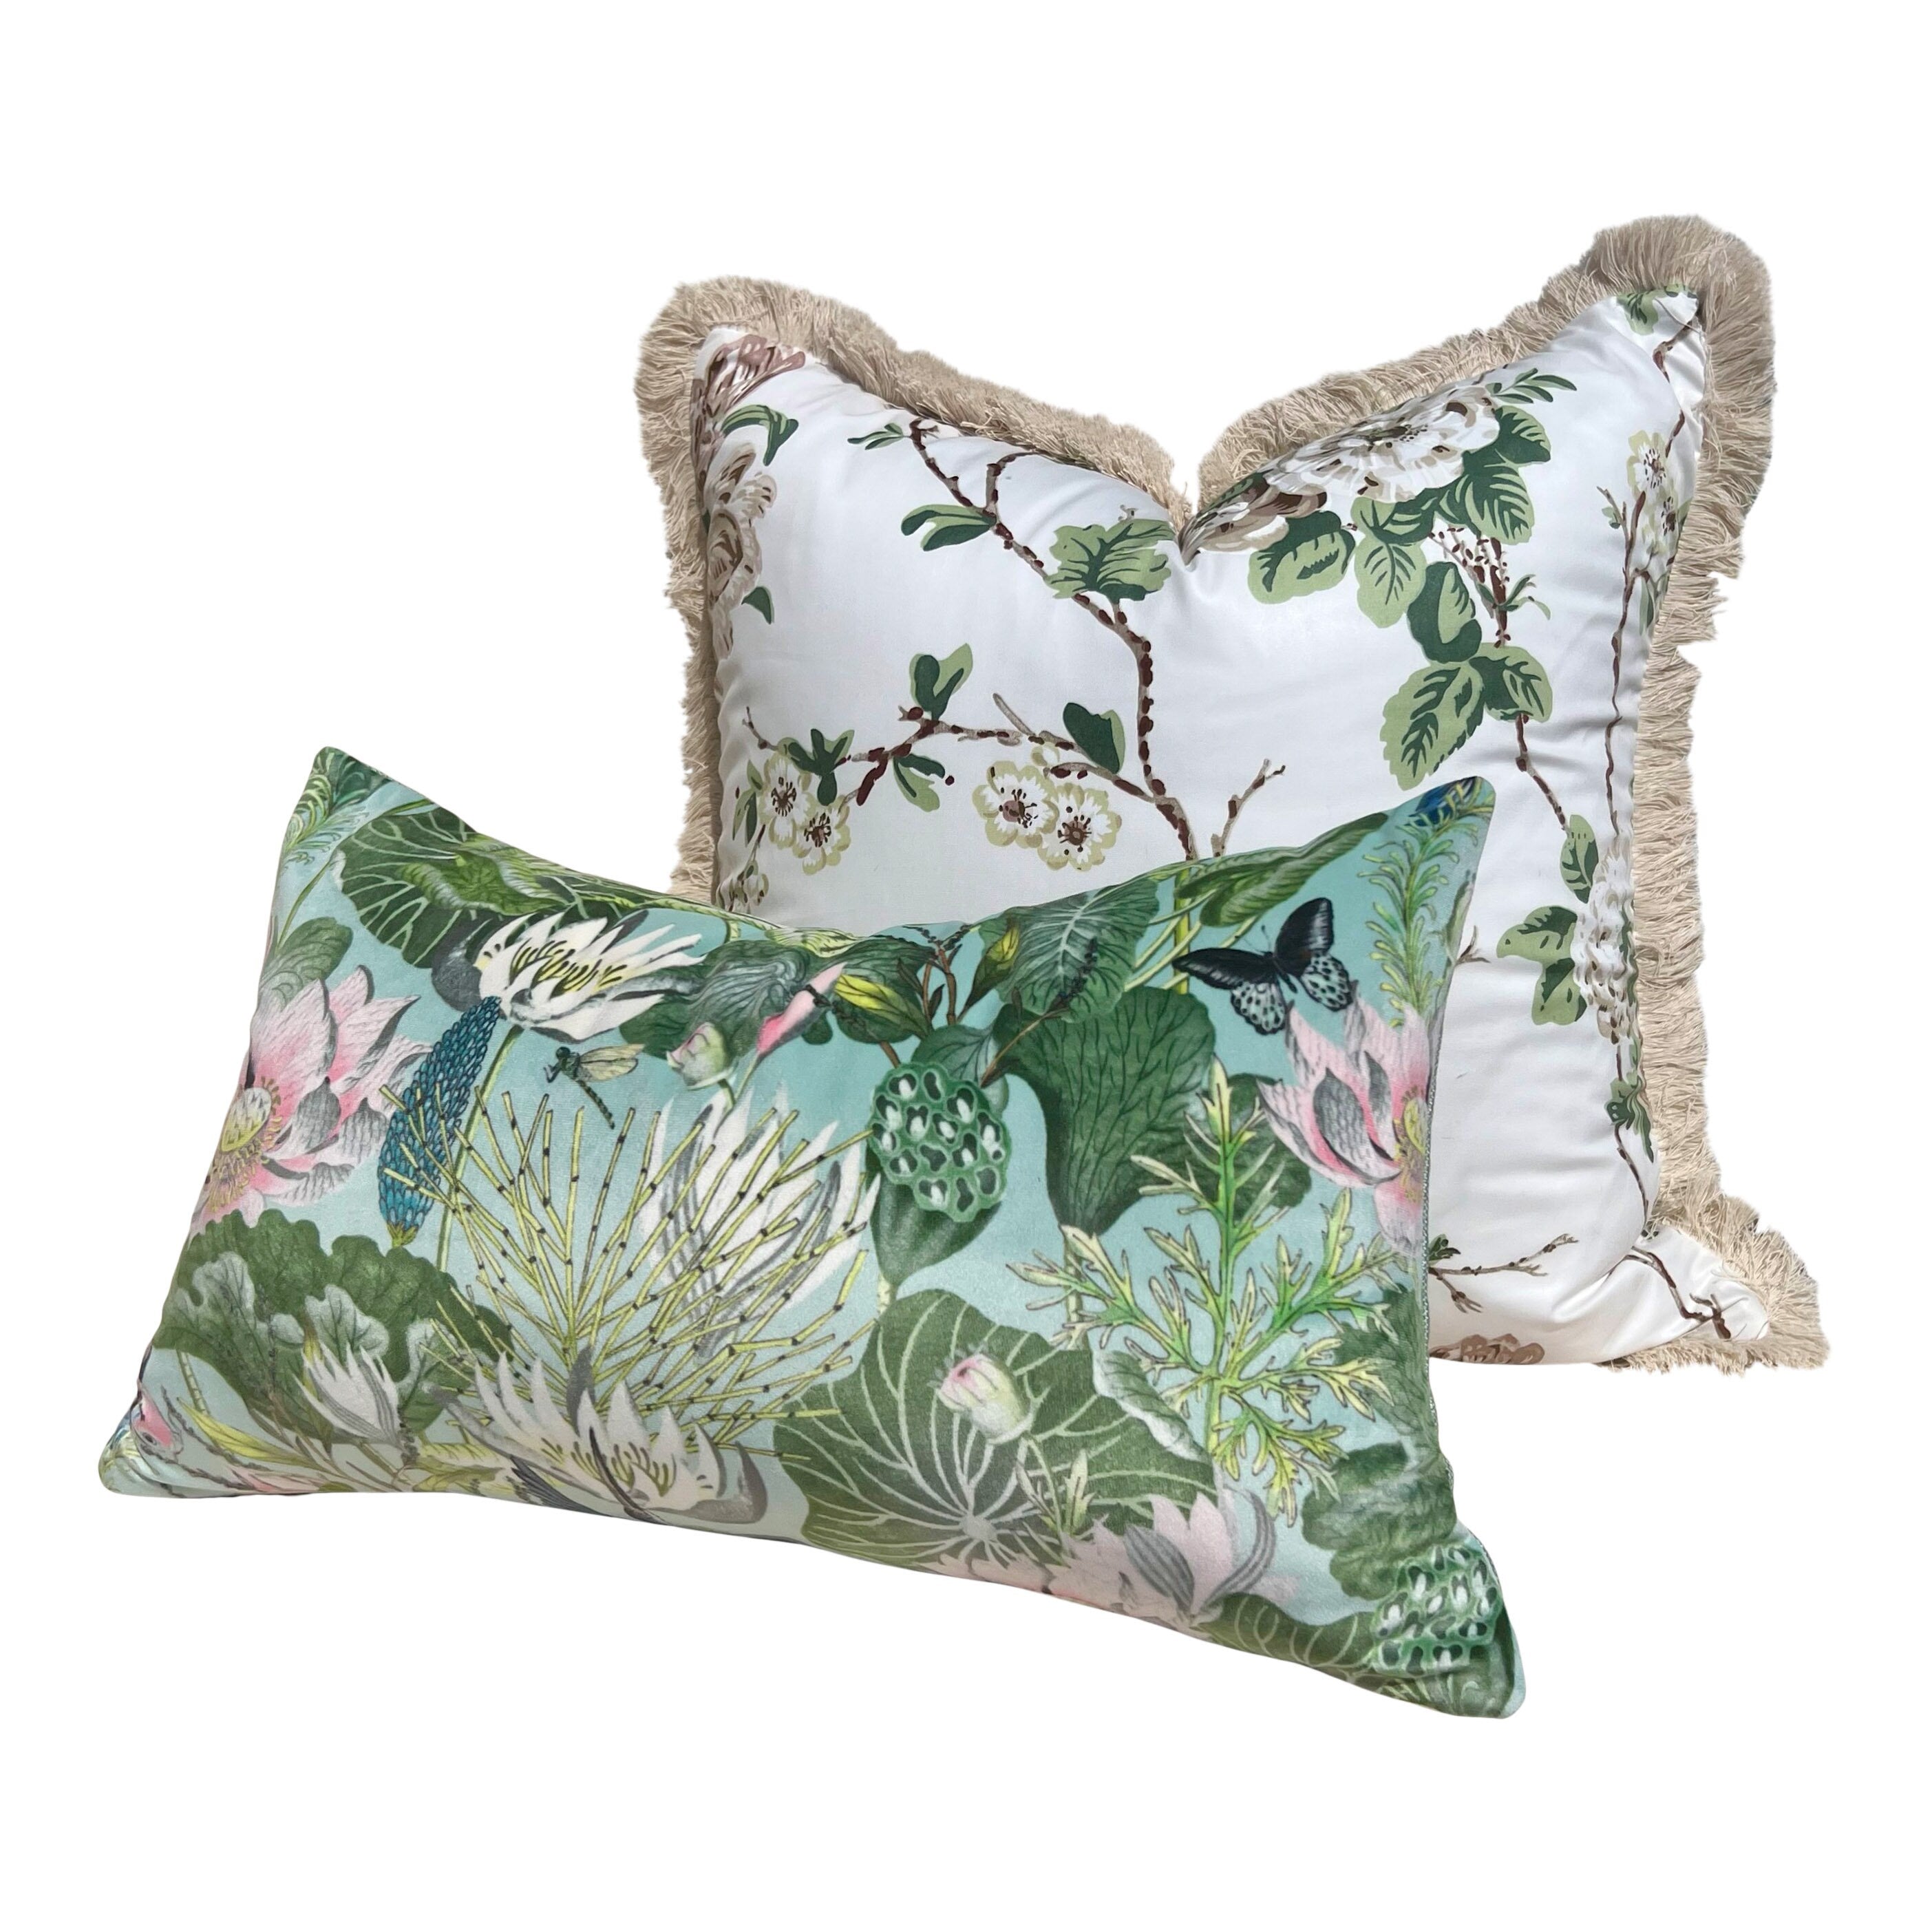 Waterlily Designer Velvet Pillow in Aqua.  Velvet Pillows, Designer Exotic Bird Pillows, High End Pillow Covers, Luxury Botanical Pillow